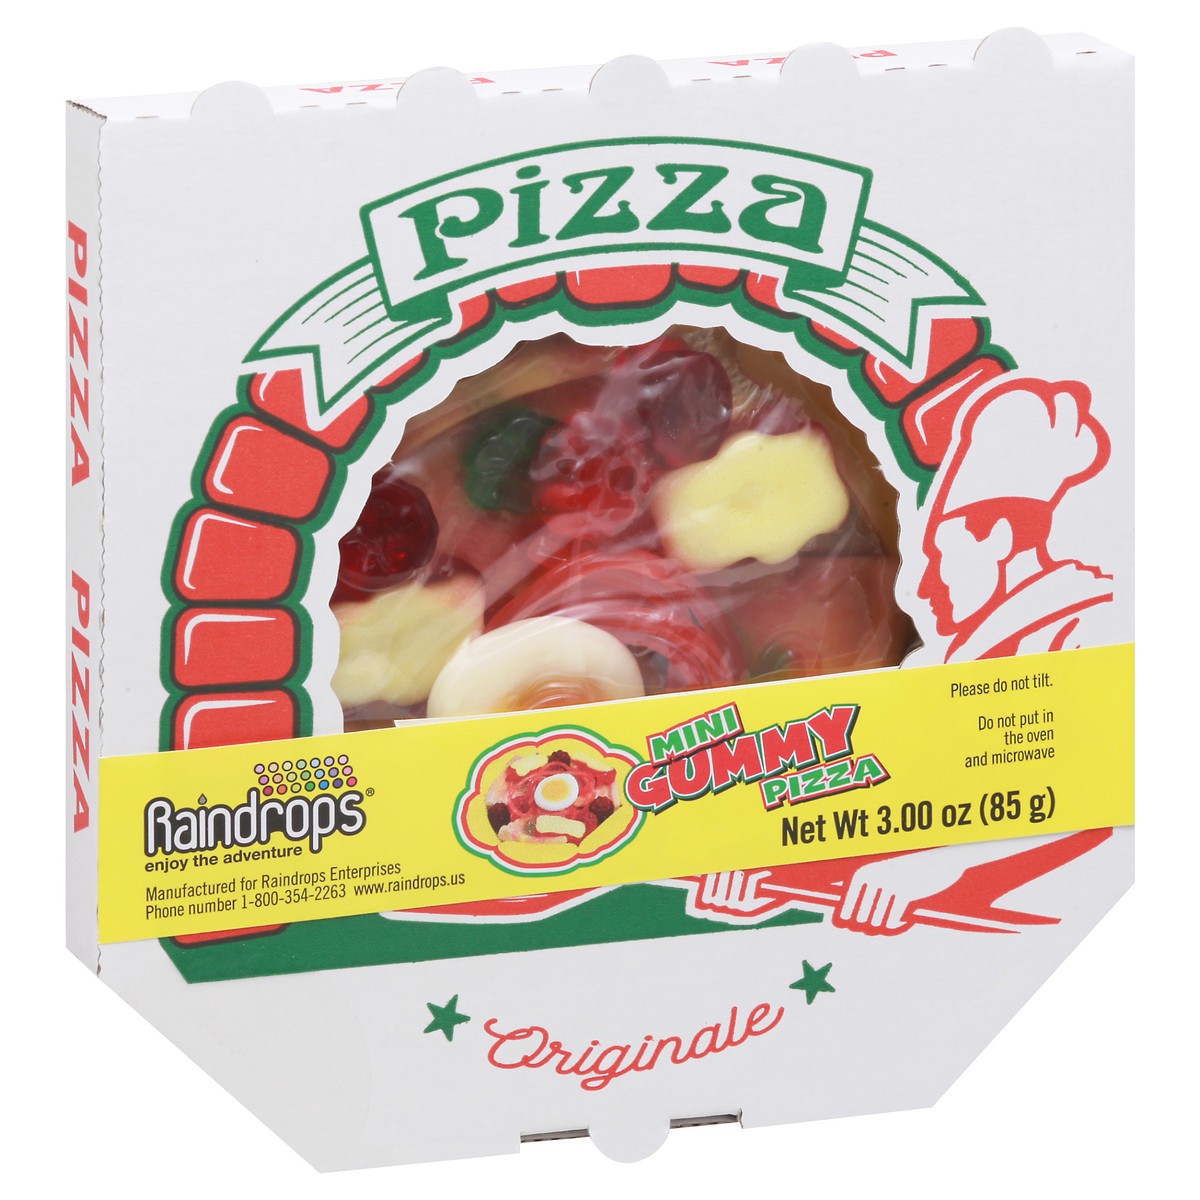 slide 2 of 9, Raindrops Originale Mini Gummy Pizza 3.00 oz Box, 3 oz